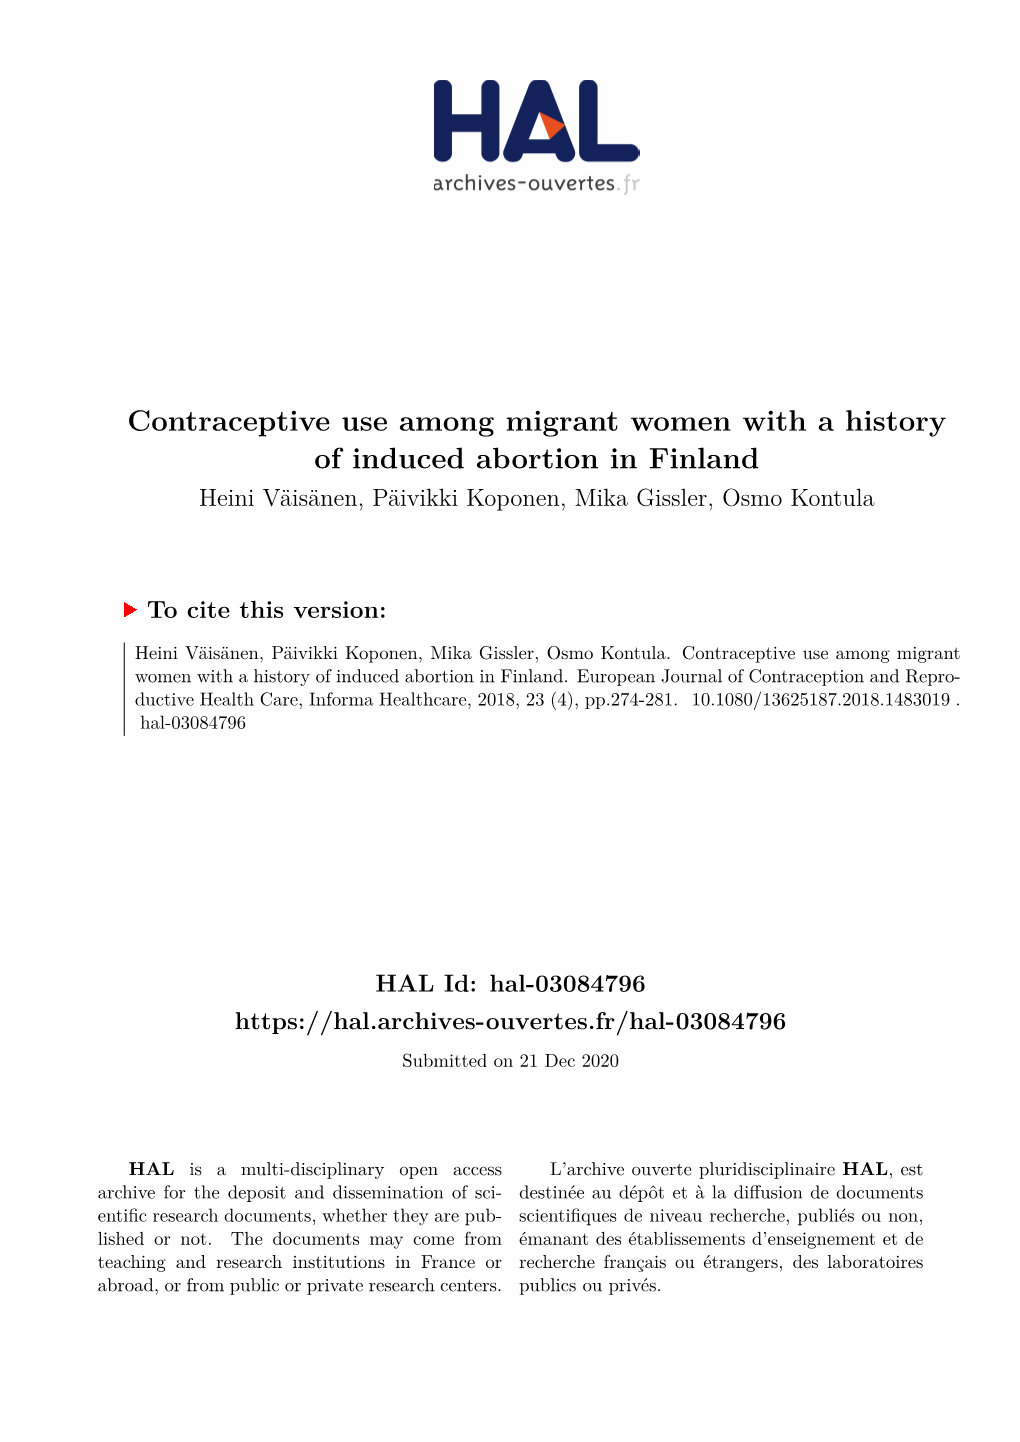 Contraceptive Use Among Migrant Women with a History of Induced Abortion in Finland Heini Väisänen, Päivikki Koponen, Mika Gissler, Osmo Kontula